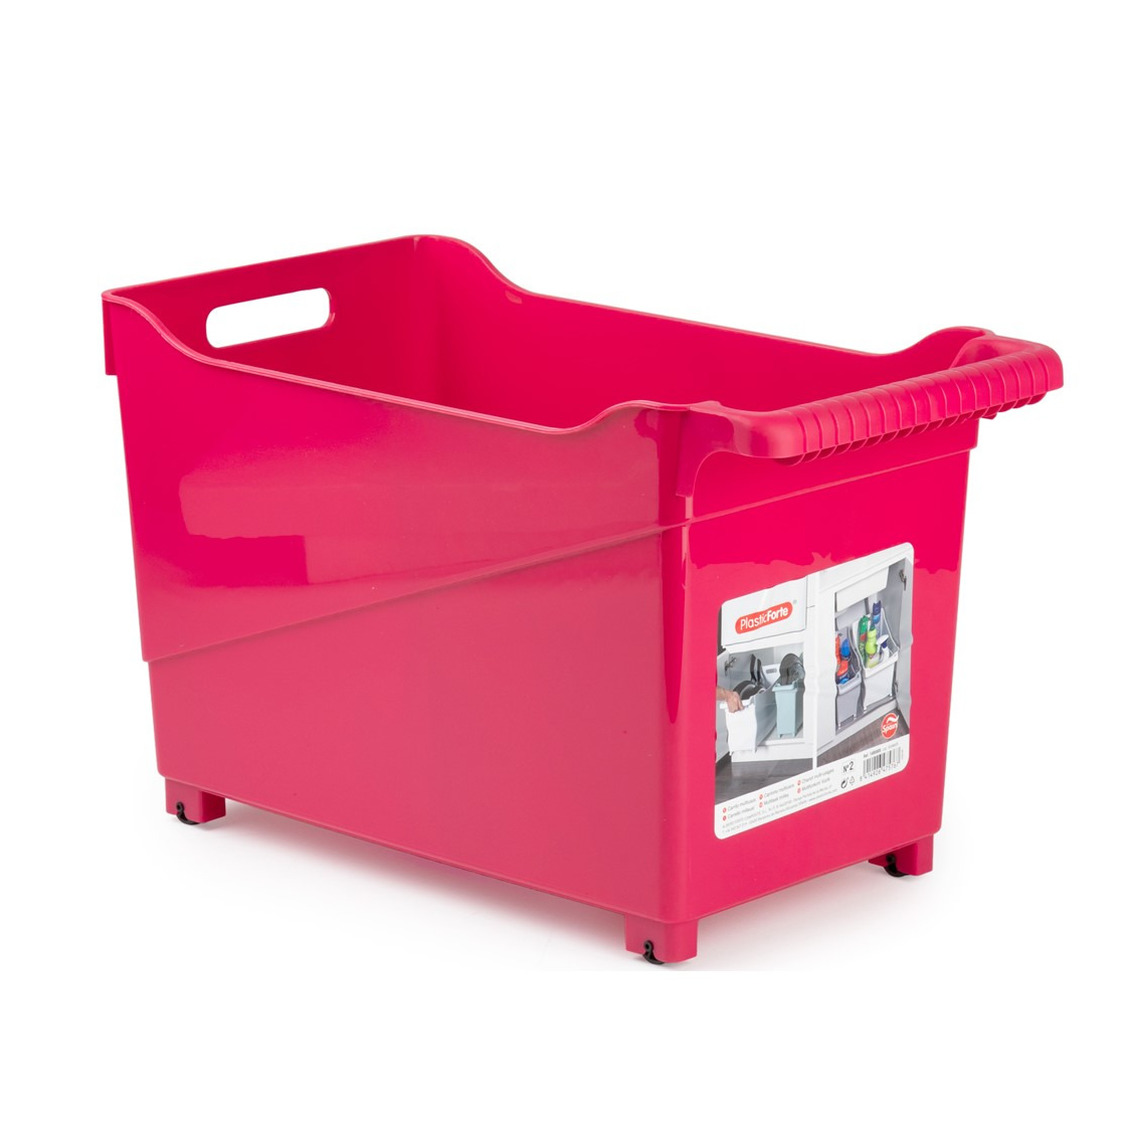 Kunststof trolley fuchsia roze op wieltjes L45 x B24 x H27 cm